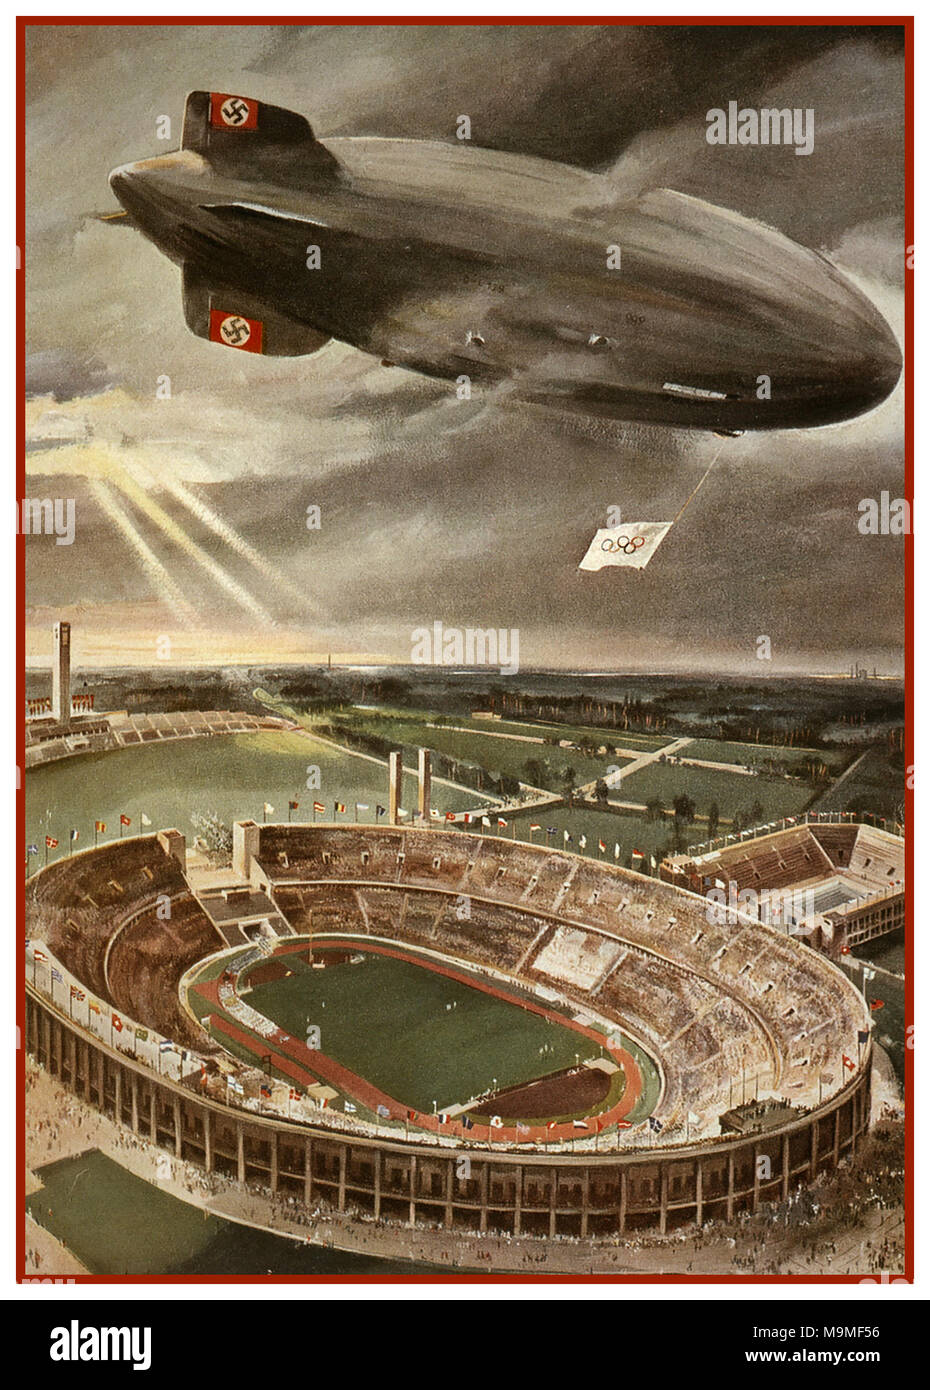 Hindenburg Zeppelin Airship 1936 Giochi Olimpici Germania nazista Berlino Vintage Poster illustrazione della nave aerea nazista Hindenburg Zeppelin Flag Olimpica con Swastika Tail Fins sullo Stadio dei Giochi Olimpici di Berlino durante la cerimonia di apertura dei Giochi Olimpici della Germania nazista. Foto Stock